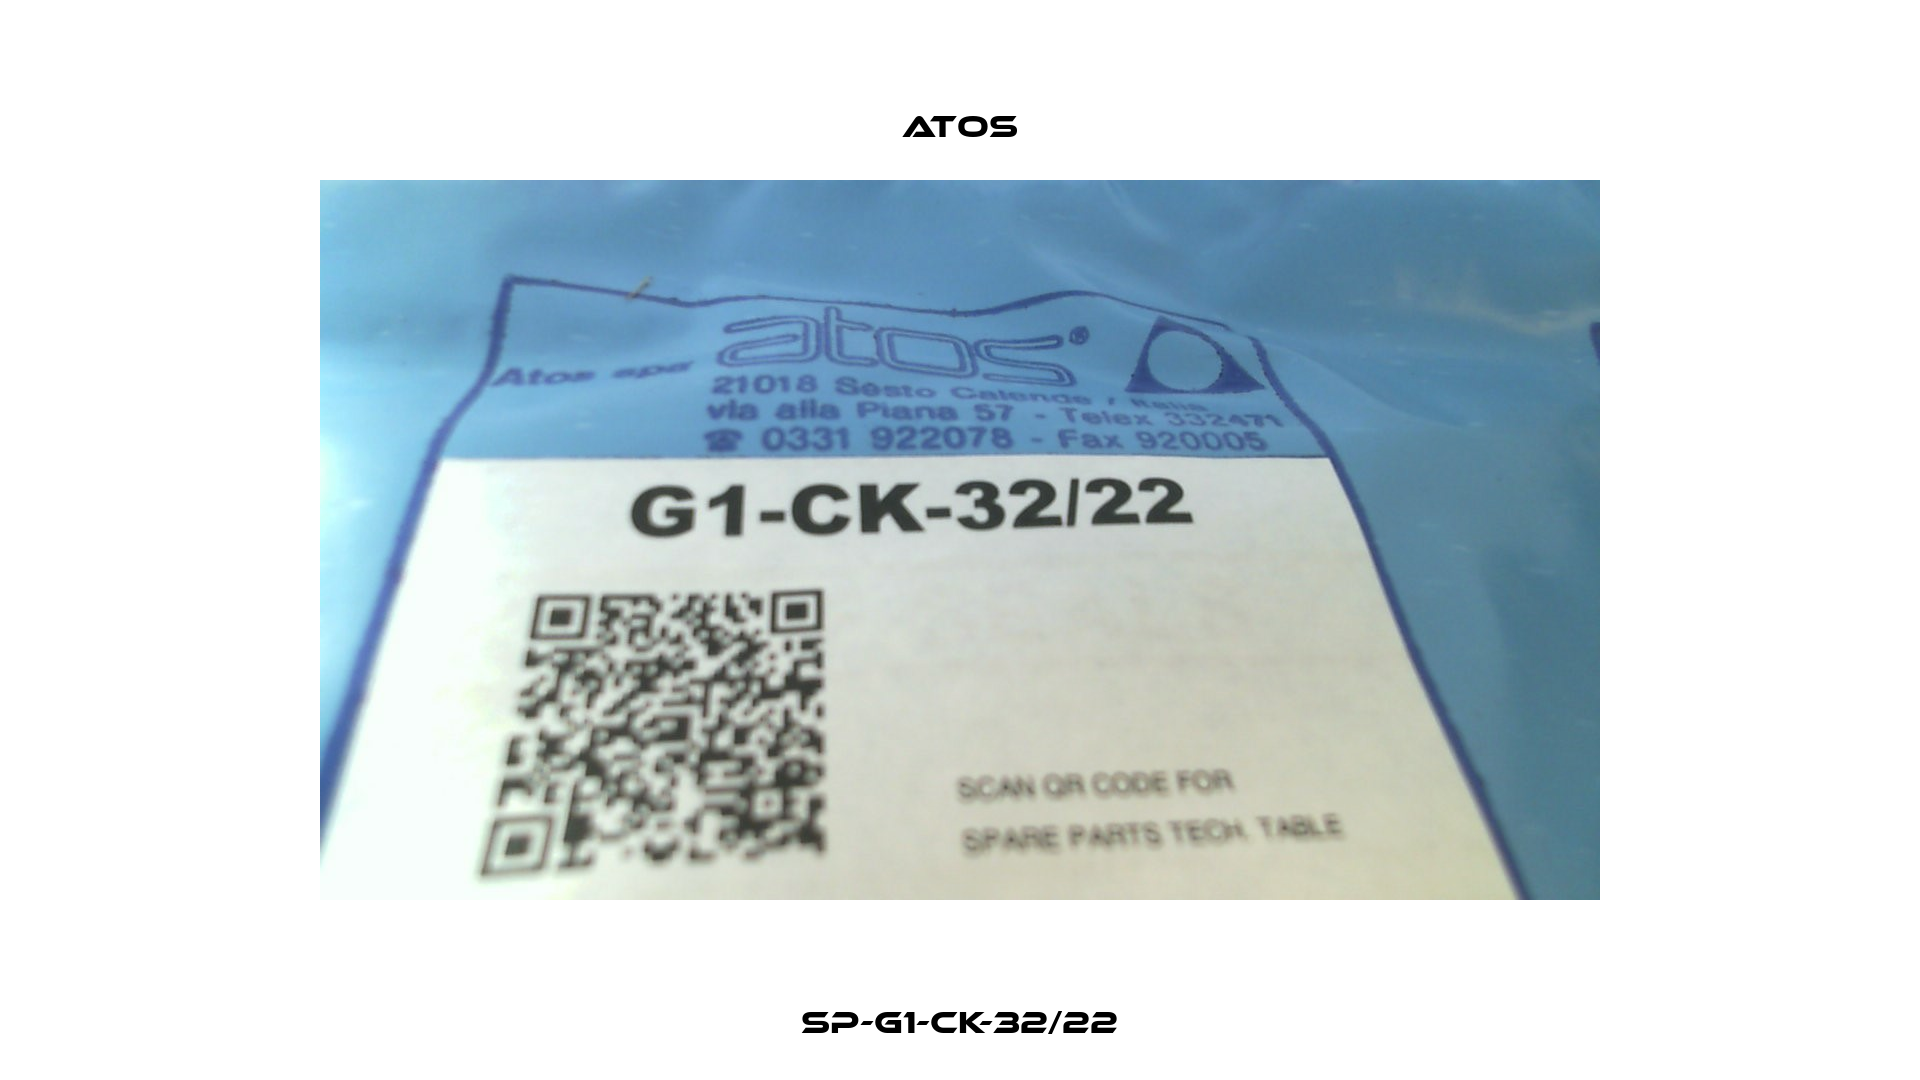 SP-G1-CK-32/22 Atos